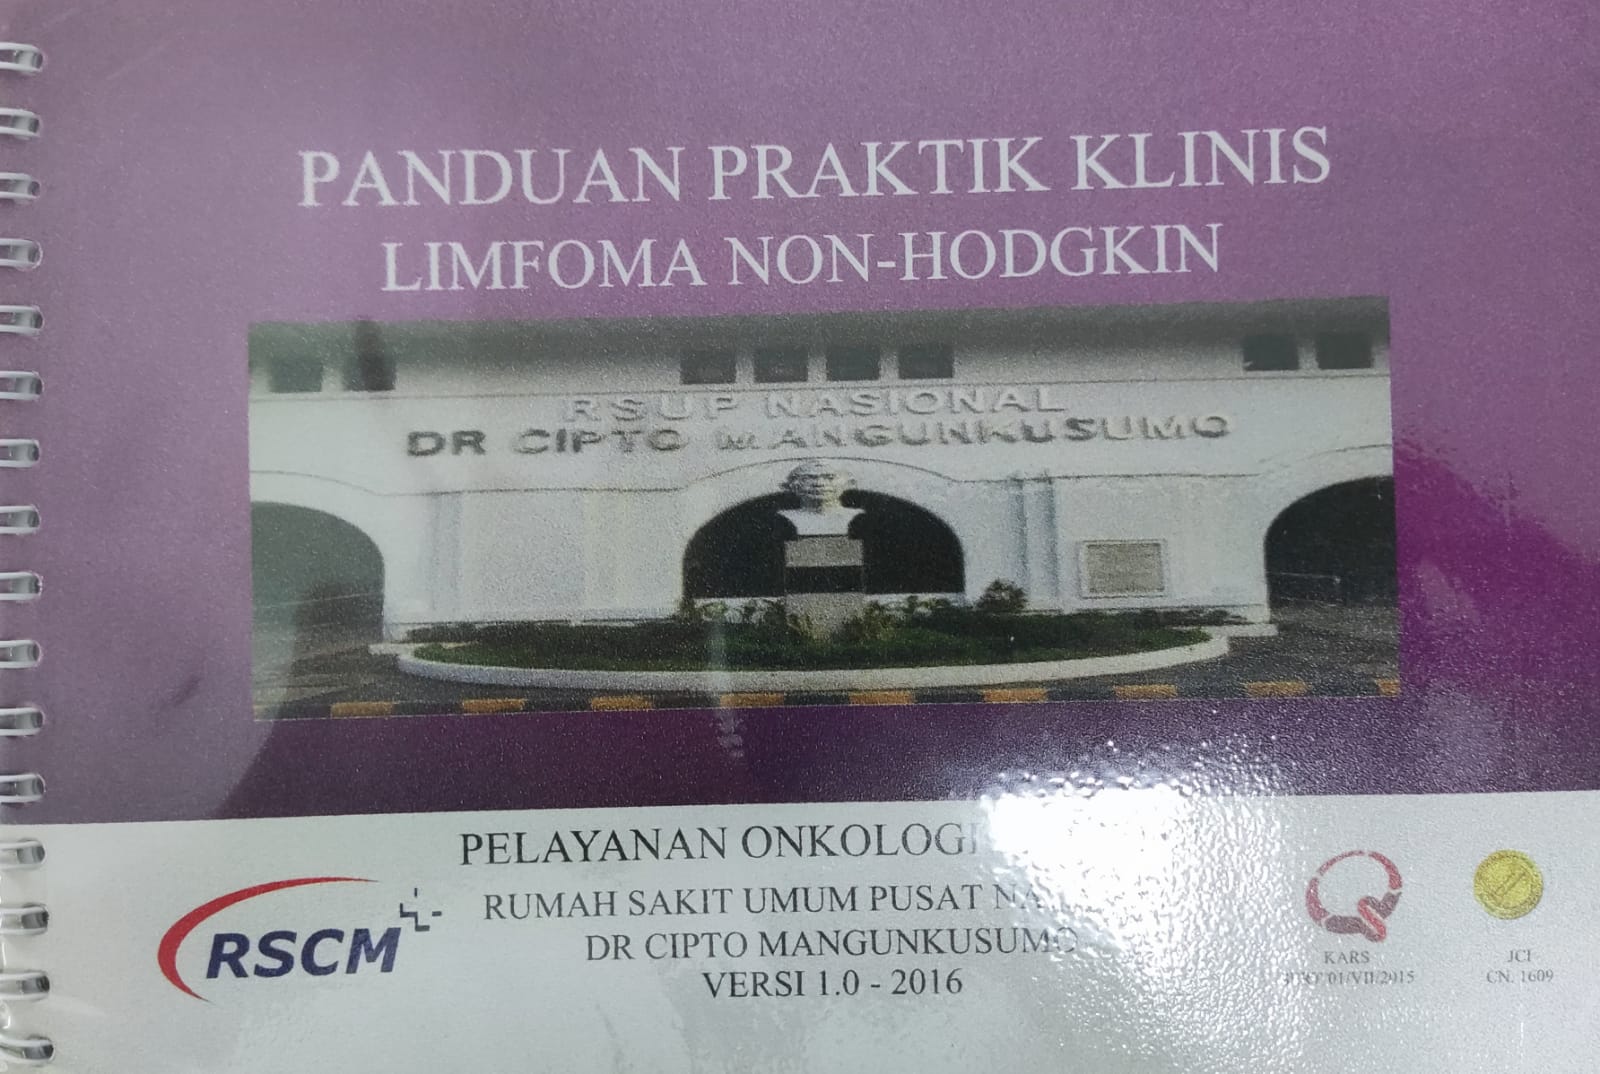 Panduan Kritik Klinis : Kanker Limfoma Non-Hodgkin